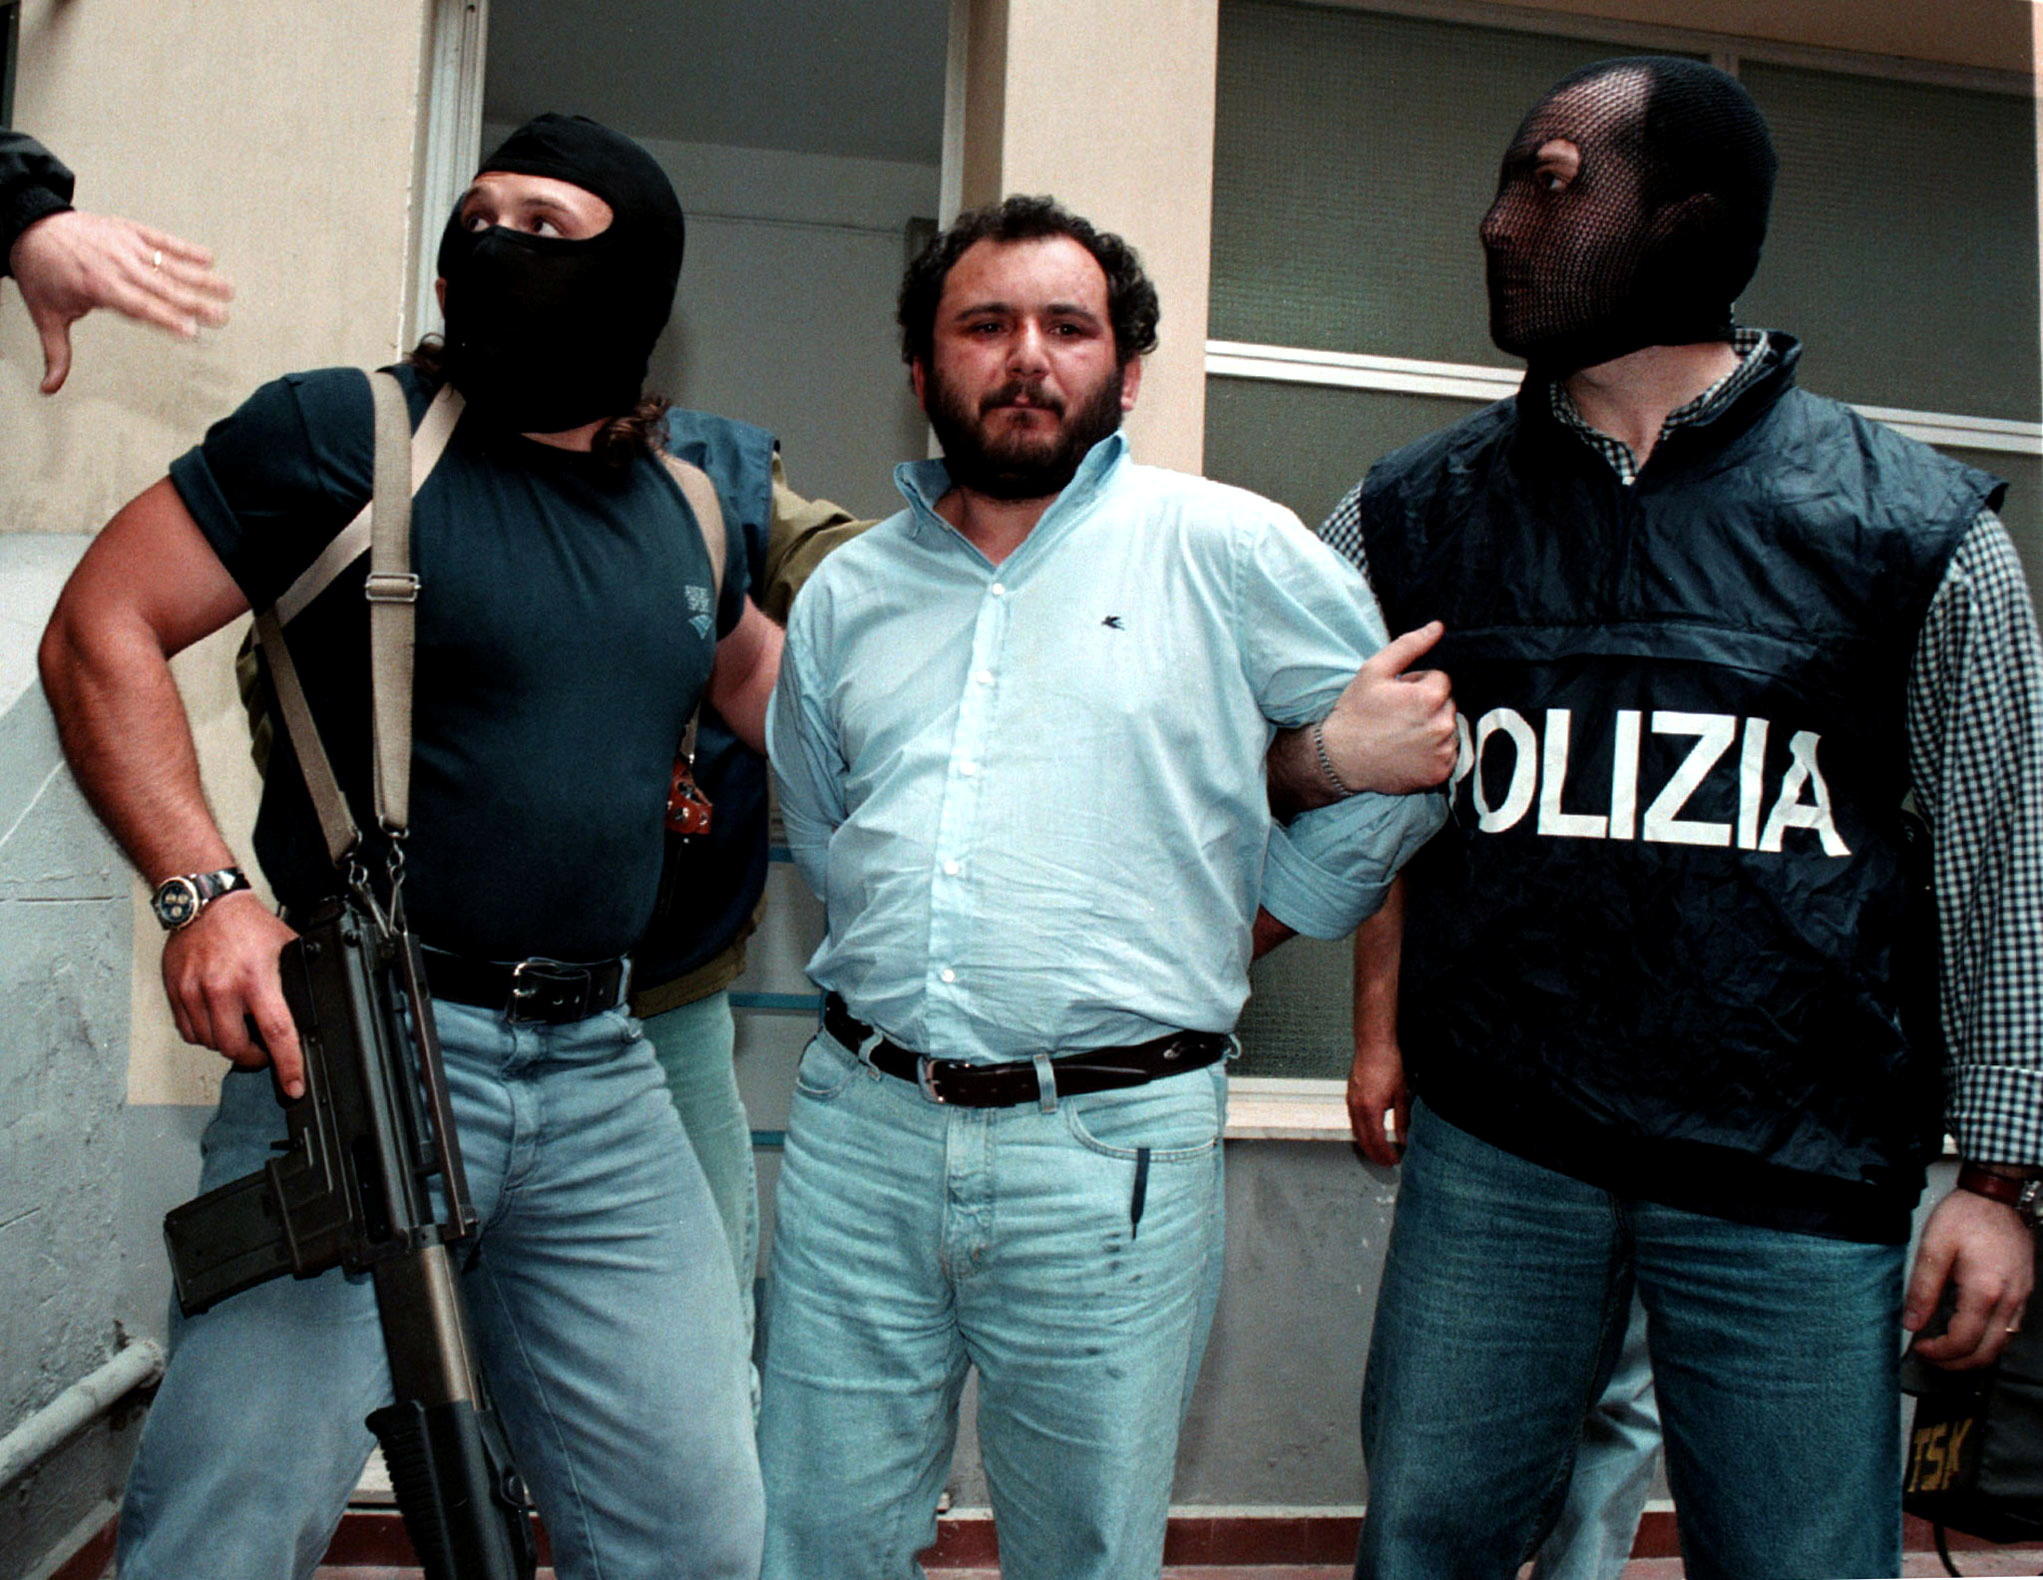 Arrestation en 1996 de Giovani Brusca, mafieux de la Cosa Nostra. Il a bénéficié du statut de repenti après avoir confessé 150 meurtres. Reuters/Tony Gentile